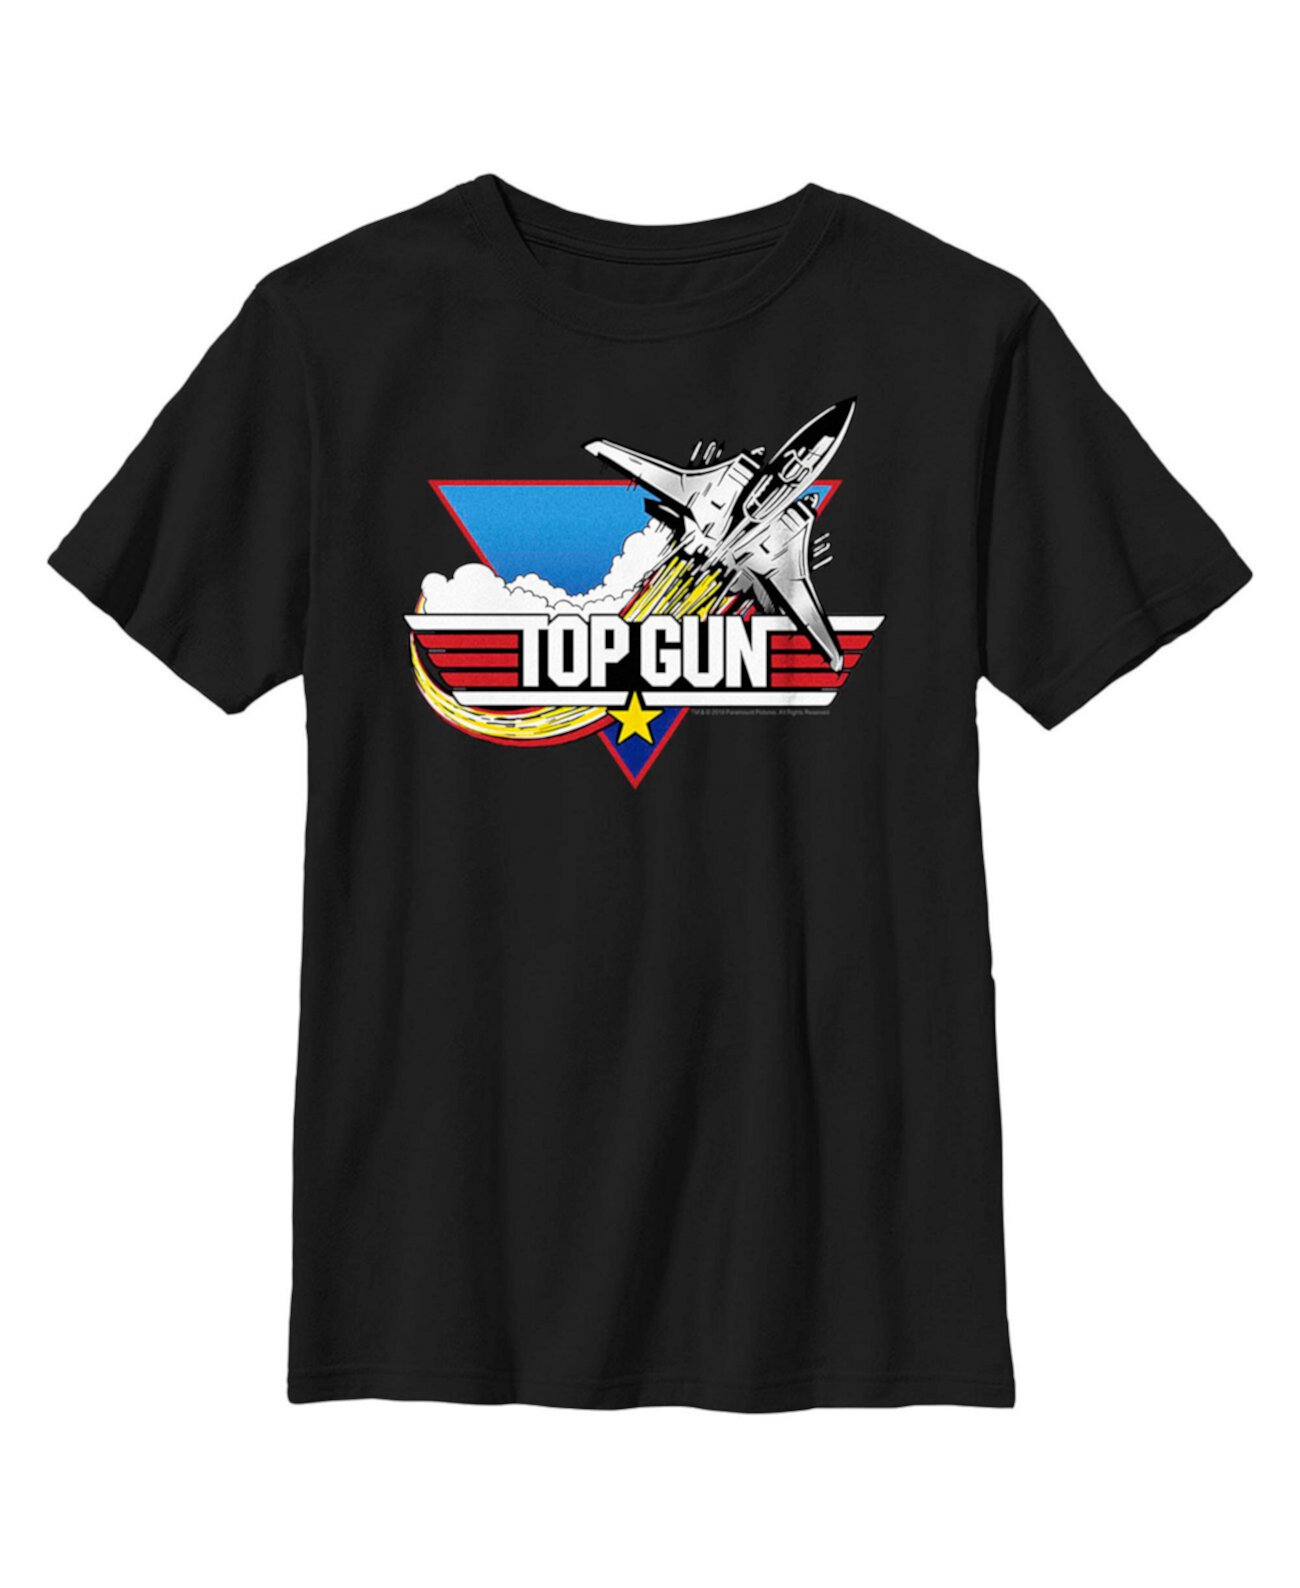 Детская футболка с логотипом Top Gun для мальчиков Paramount